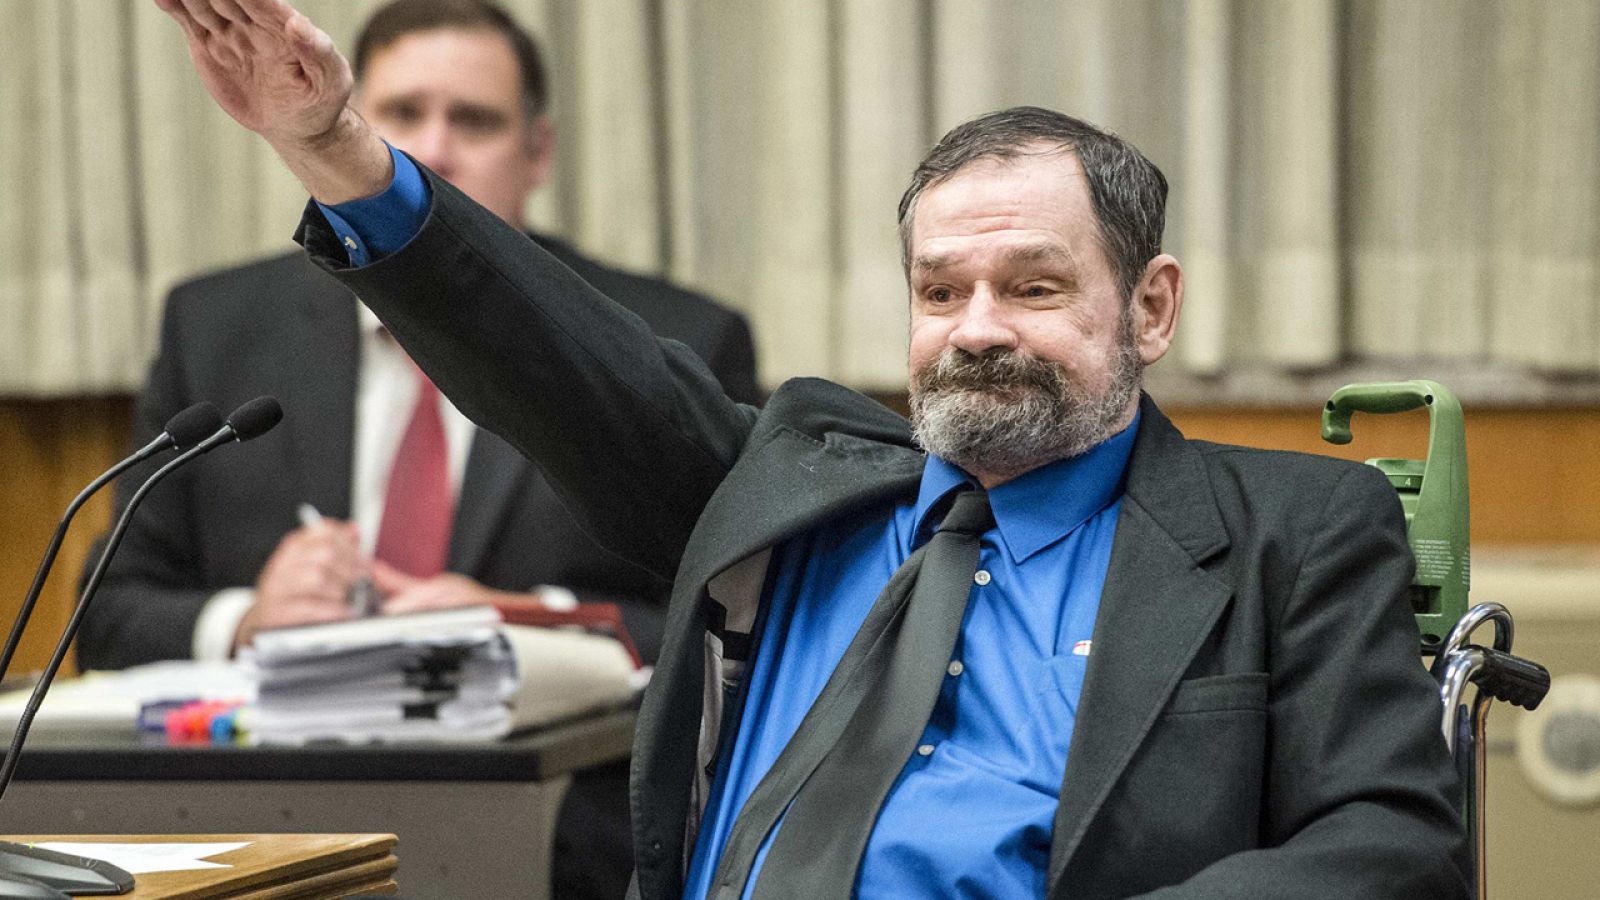 El racista que mató a tres personas en centros judíos en Kansas hace el saludo fascista durante el juicio